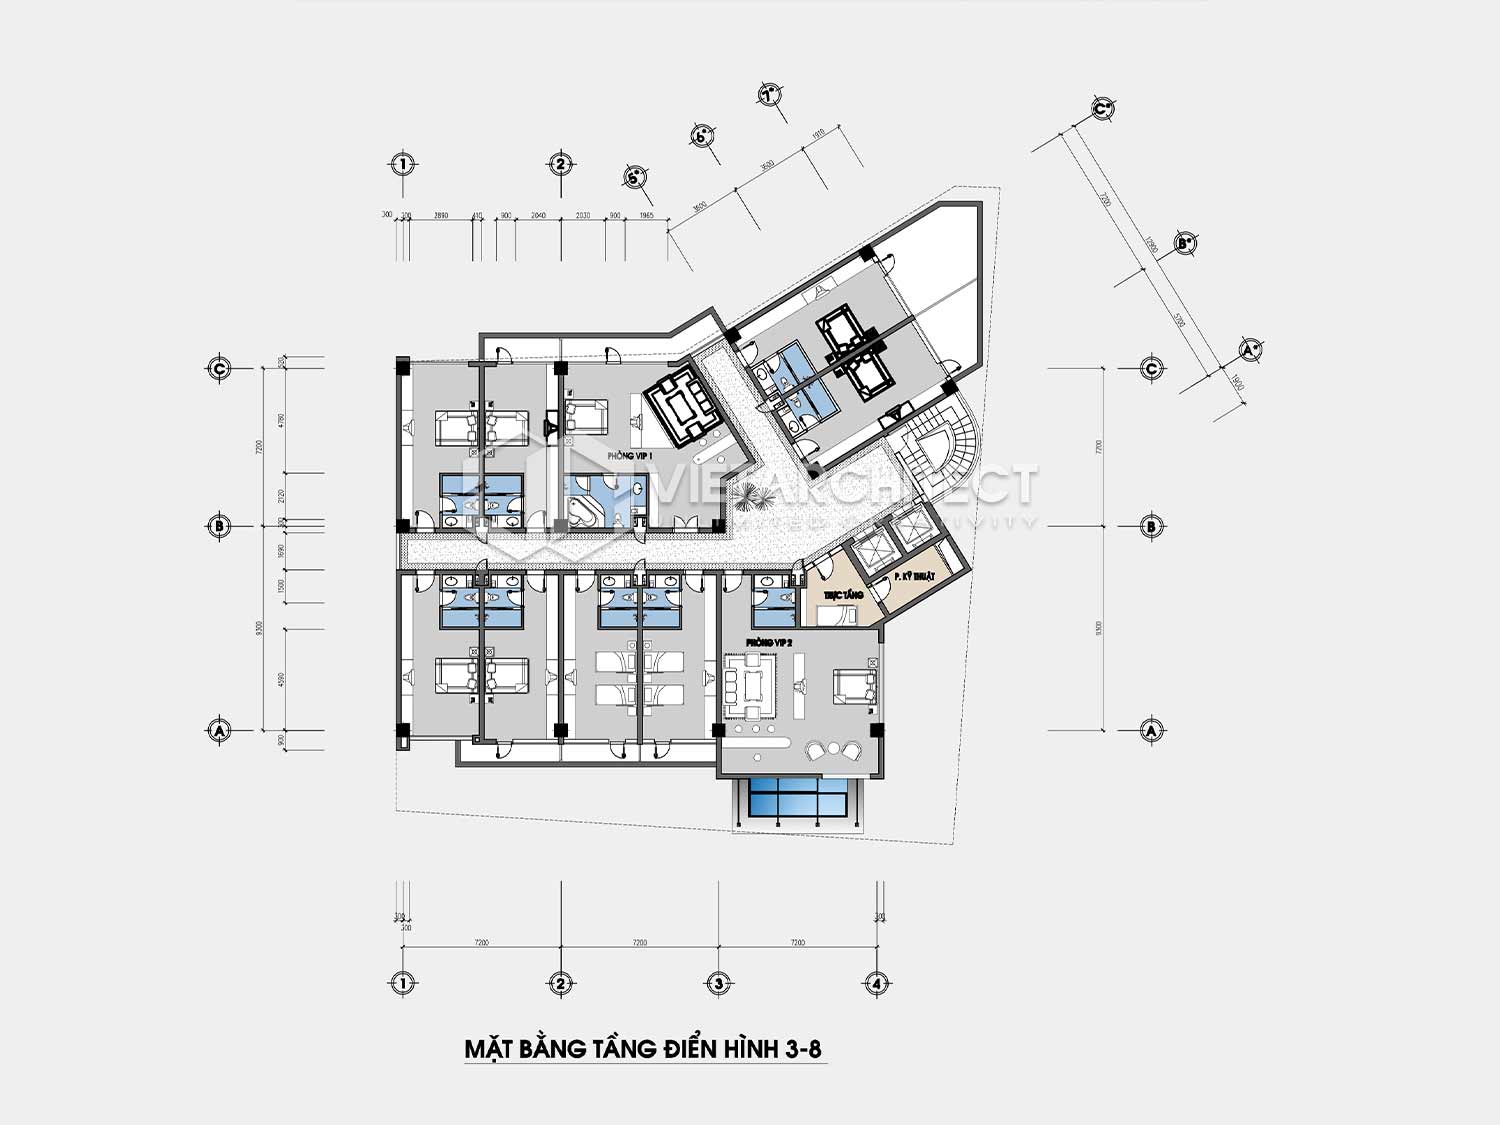 Thiết kế khách sạn Tam Đảo mặt bằng tầng 3-8